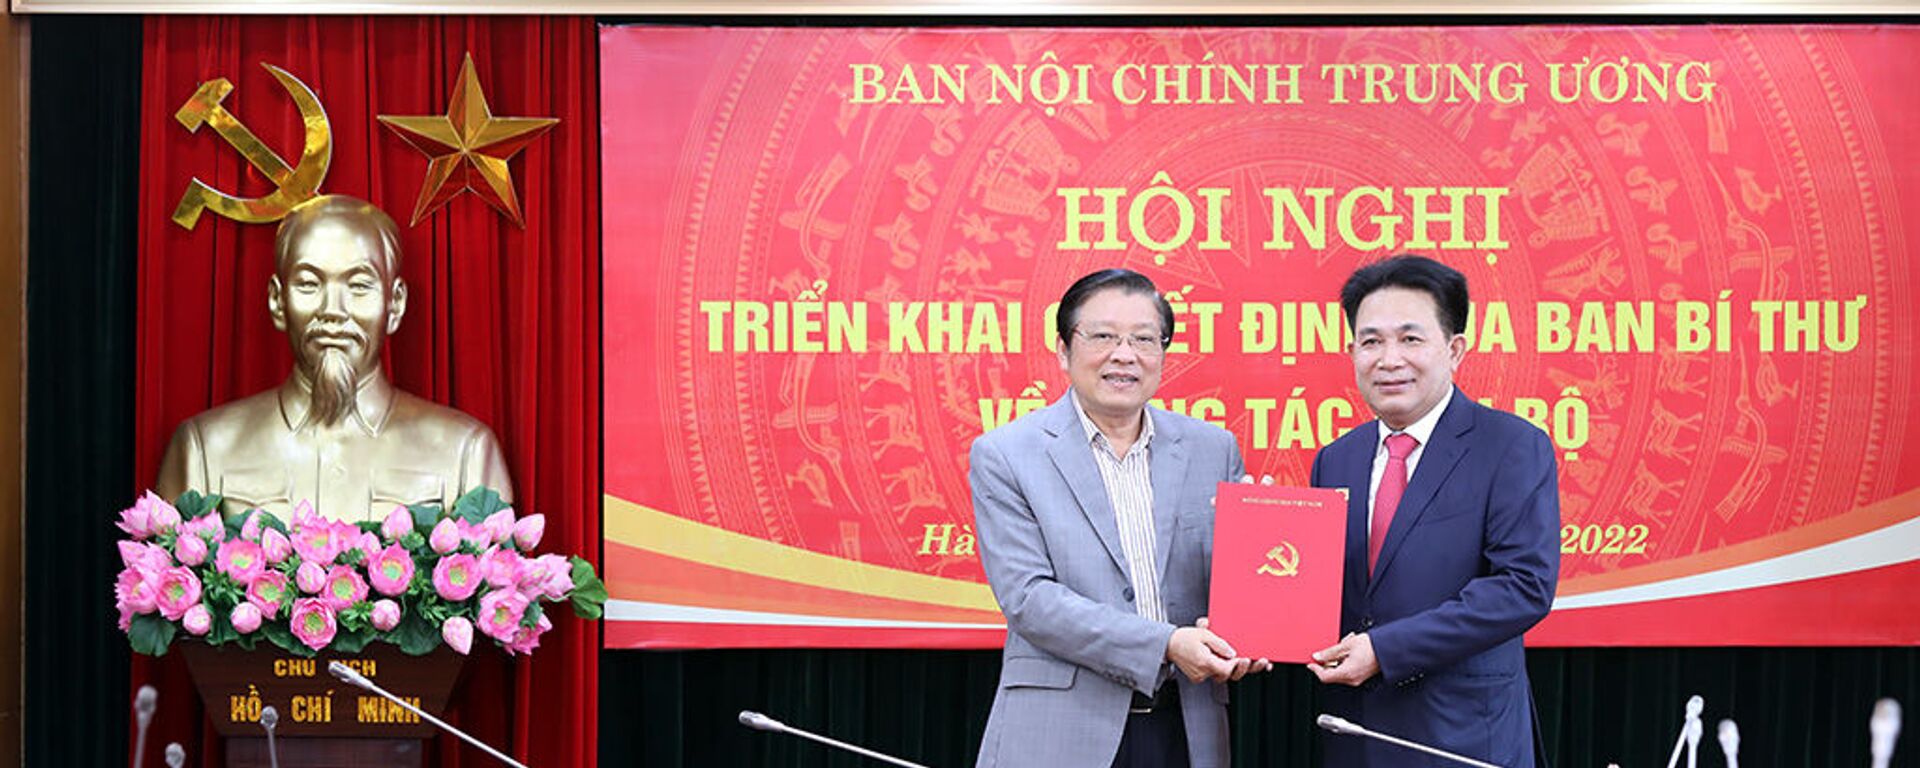 Ông Nguyễn Văn Yên (phải) nhận quyết định bổ nhiệm - Sputnik Việt Nam, 1920, 28.01.2022